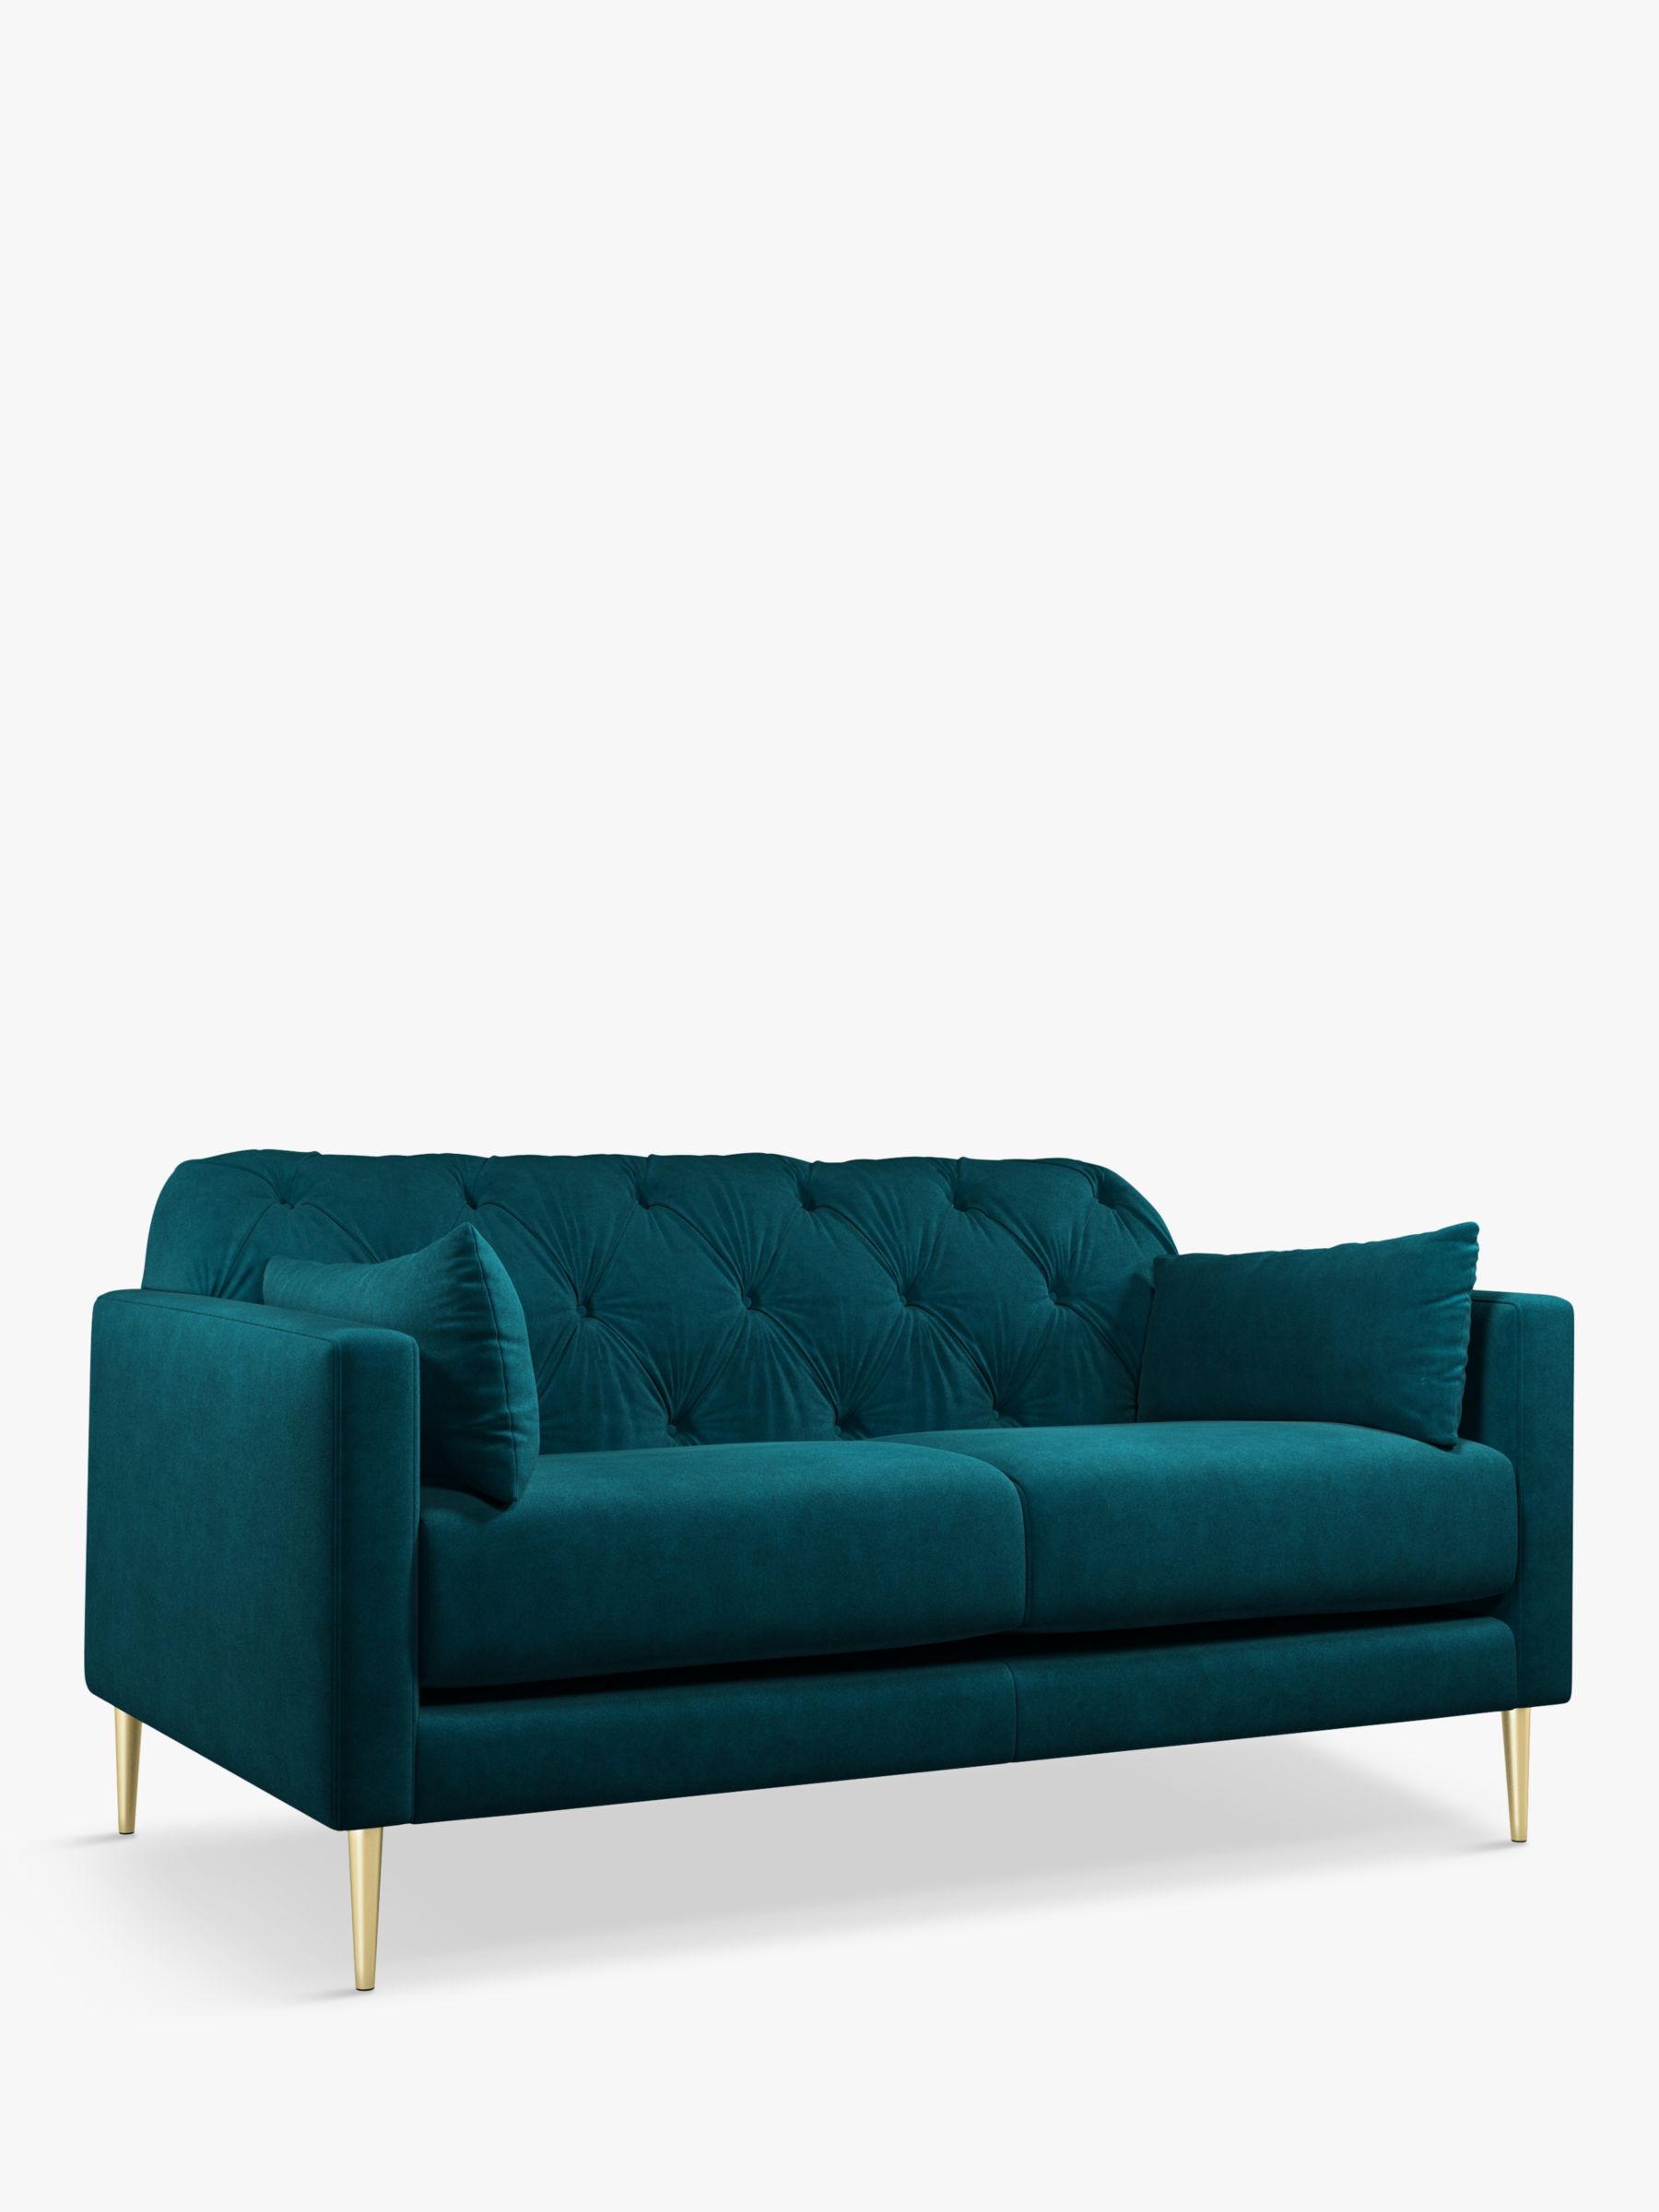 Mendel Range, Swoon Mendel Medium 2 Seater Sofa, Gold Leg, Wildwood Green Velvet